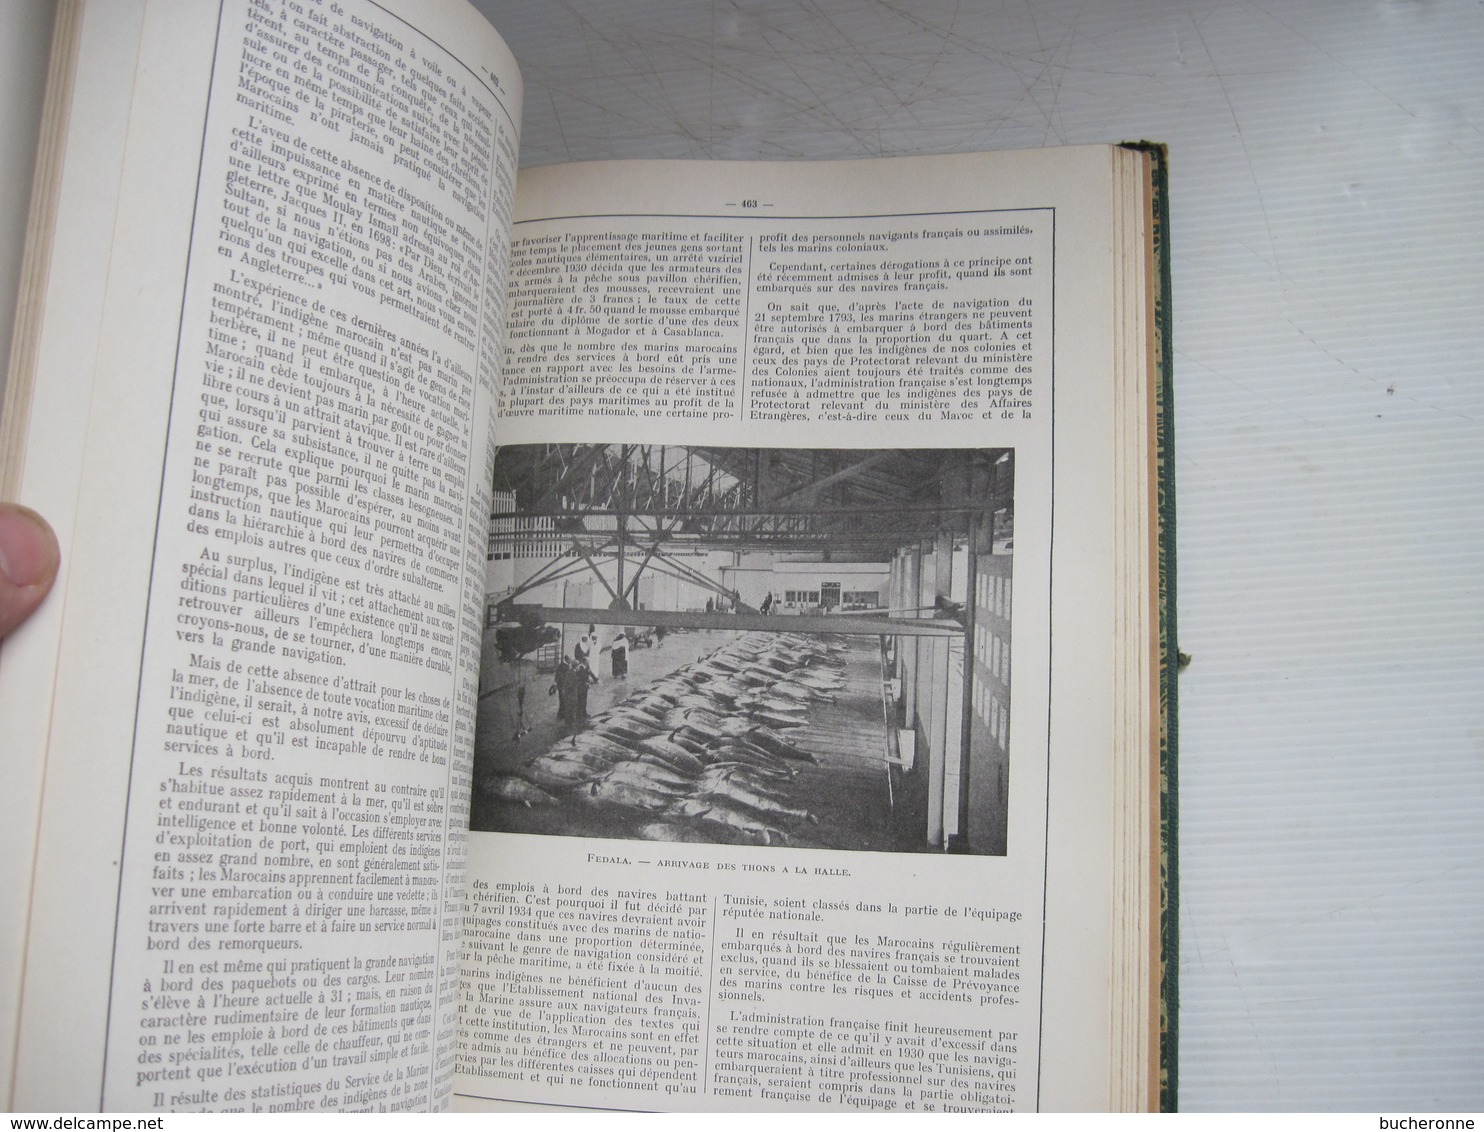 MAROC Encyclopedie Coloniale et Maritime 1948 LANG BLANCHONG nombreuses cartes & photos 580 pages TBE voir couverture